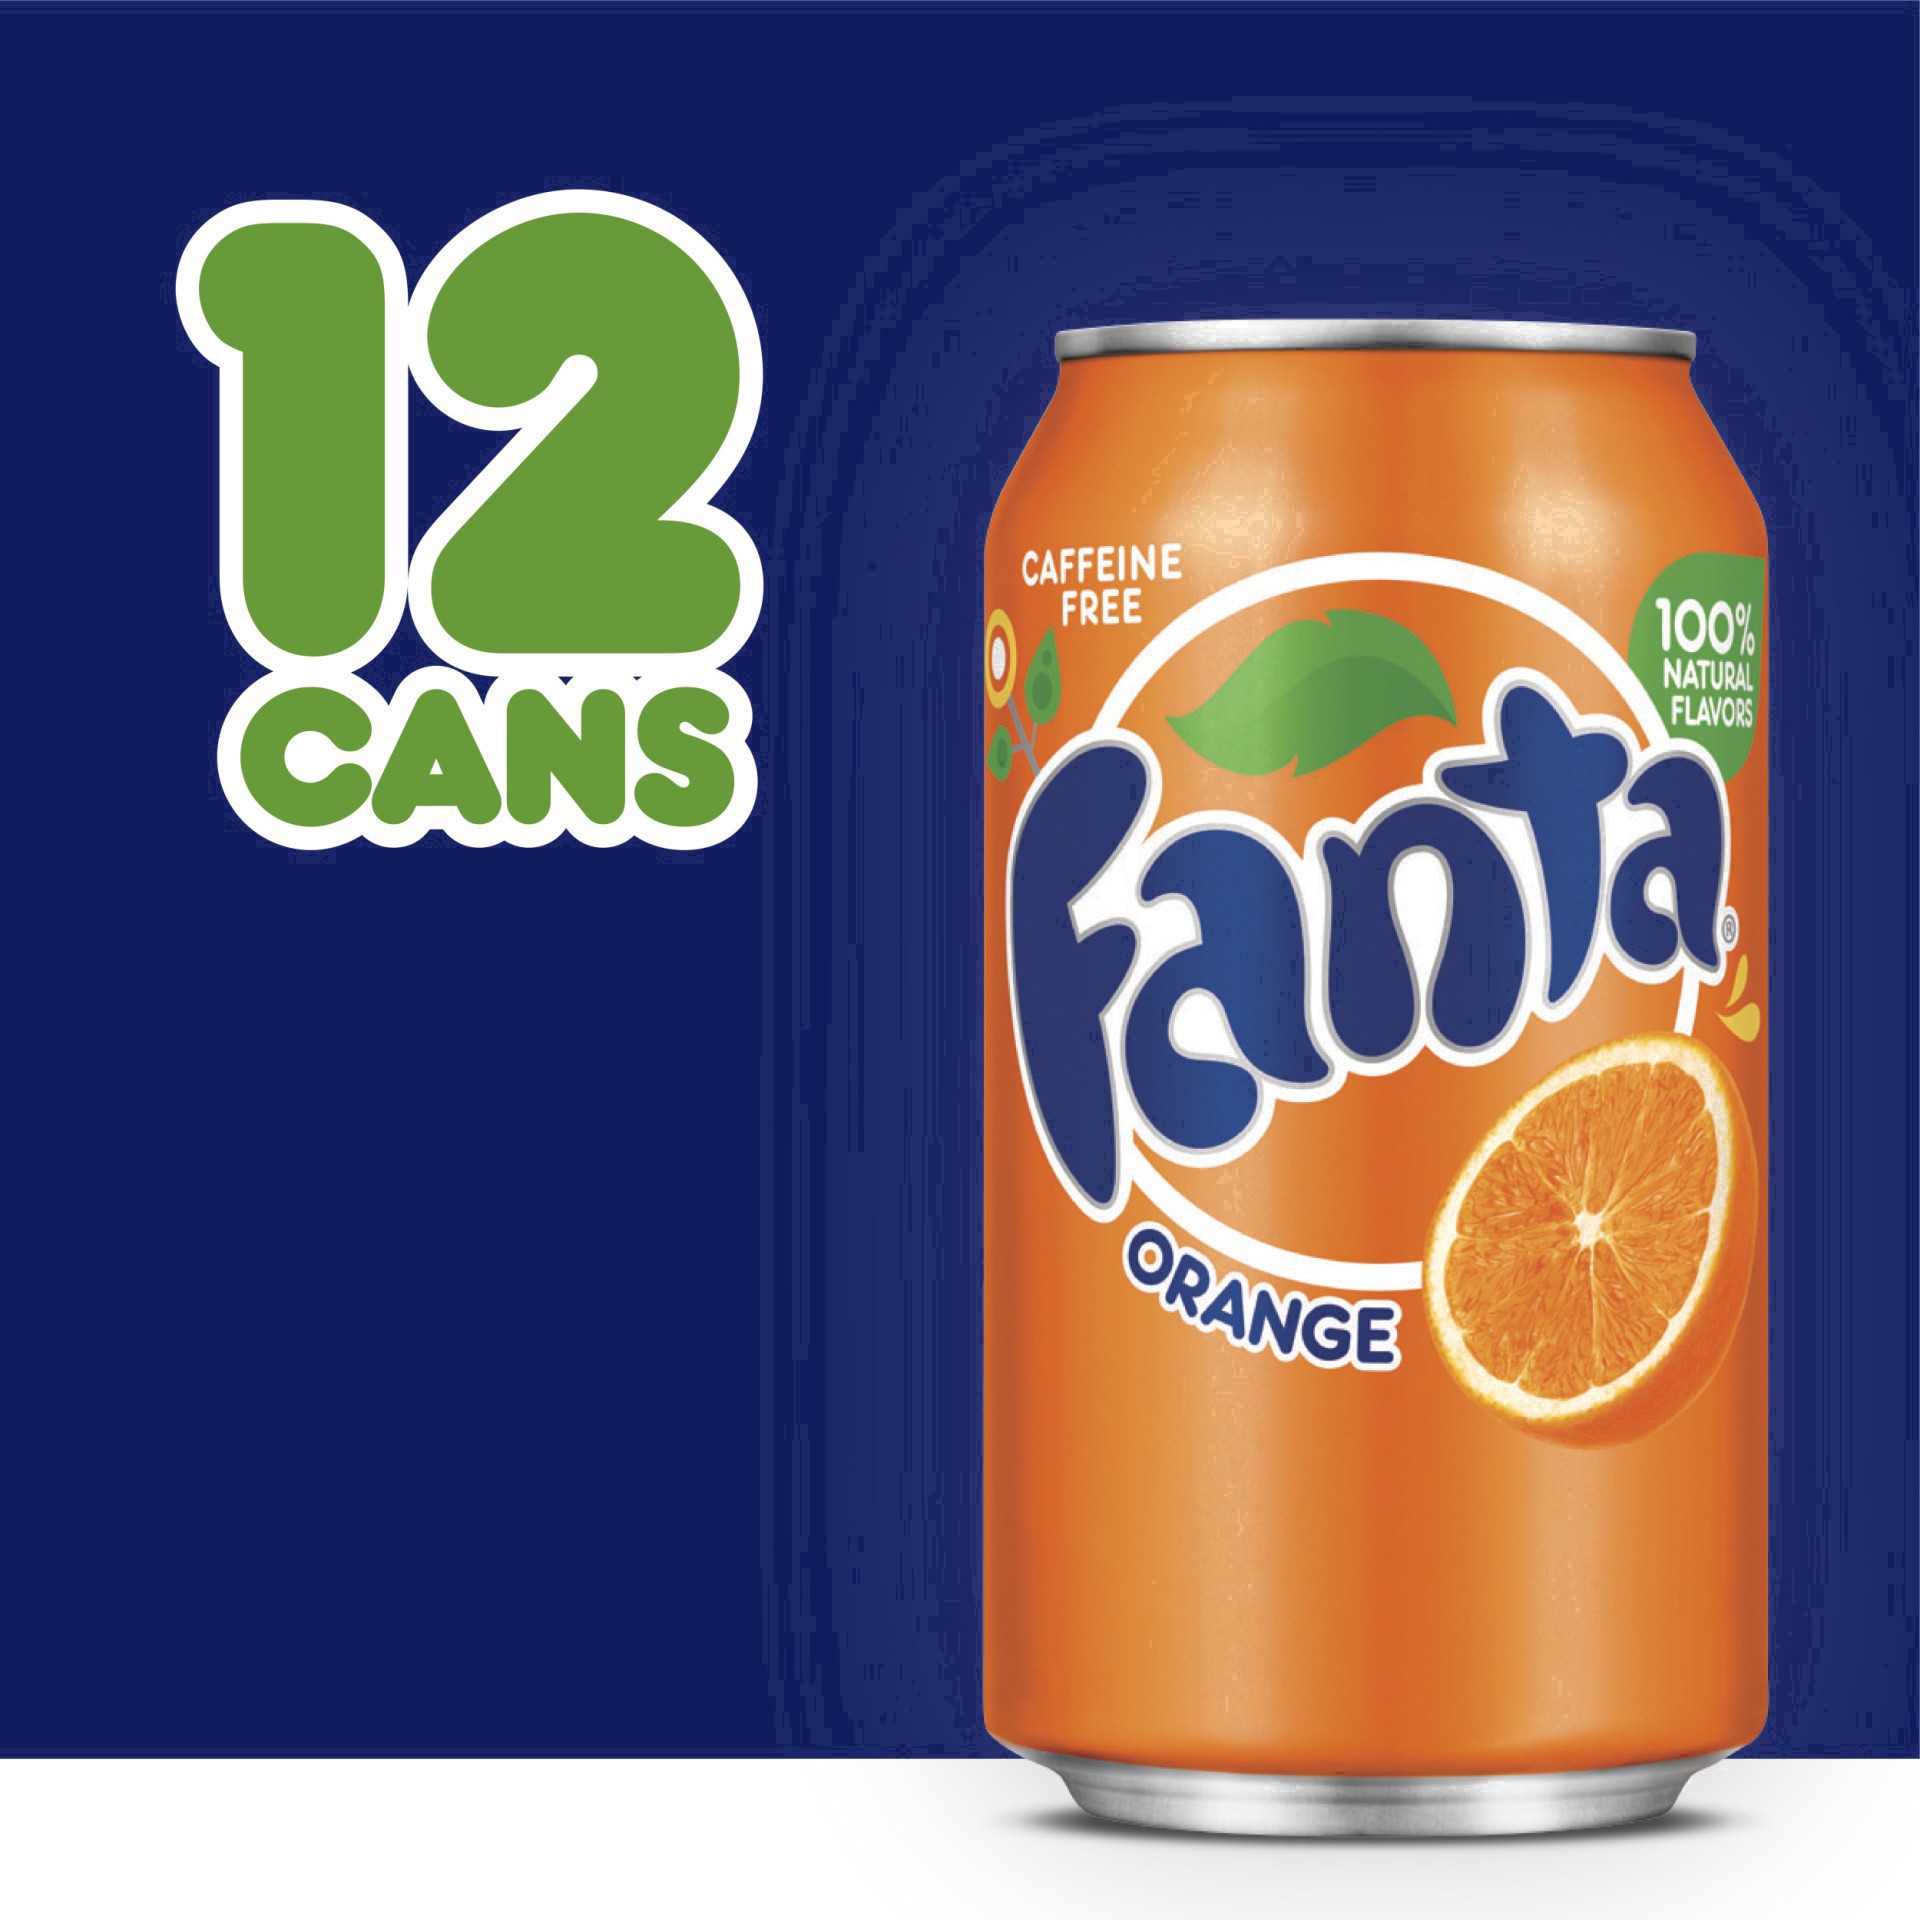 slide 13 of 95, Fanta Orange Soda Fridge Pack Cans, 12 fl oz, 12 Pack, 12 ct